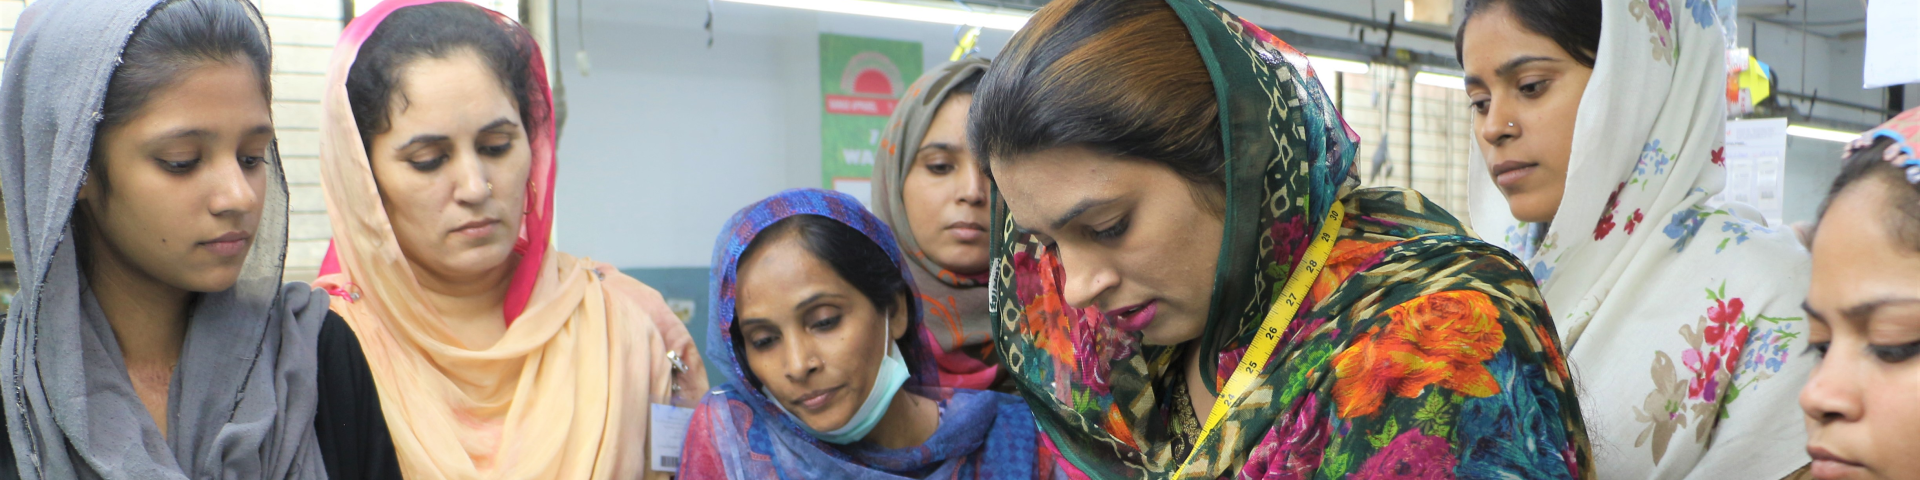 Durch Change-Management-Maßnahmen in den Textilunternehmen werden Frauen für höhere Positionen befähigt.